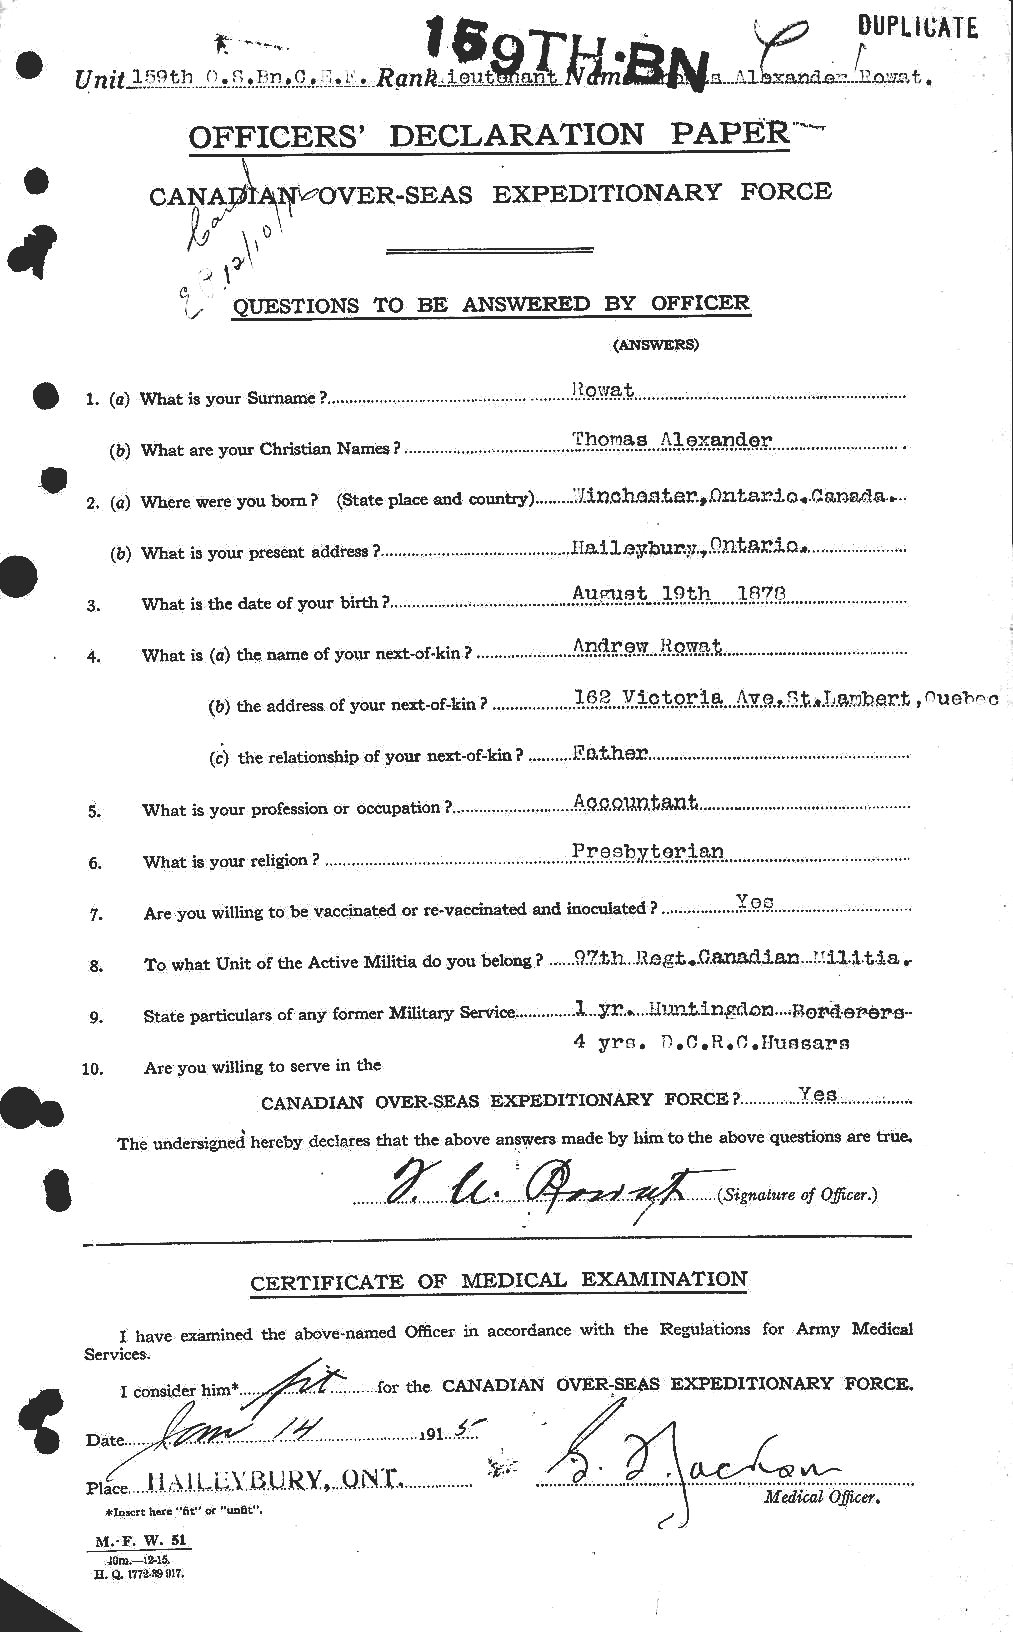 Dossiers du Personnel de la Première Guerre mondiale - CEC 612651a